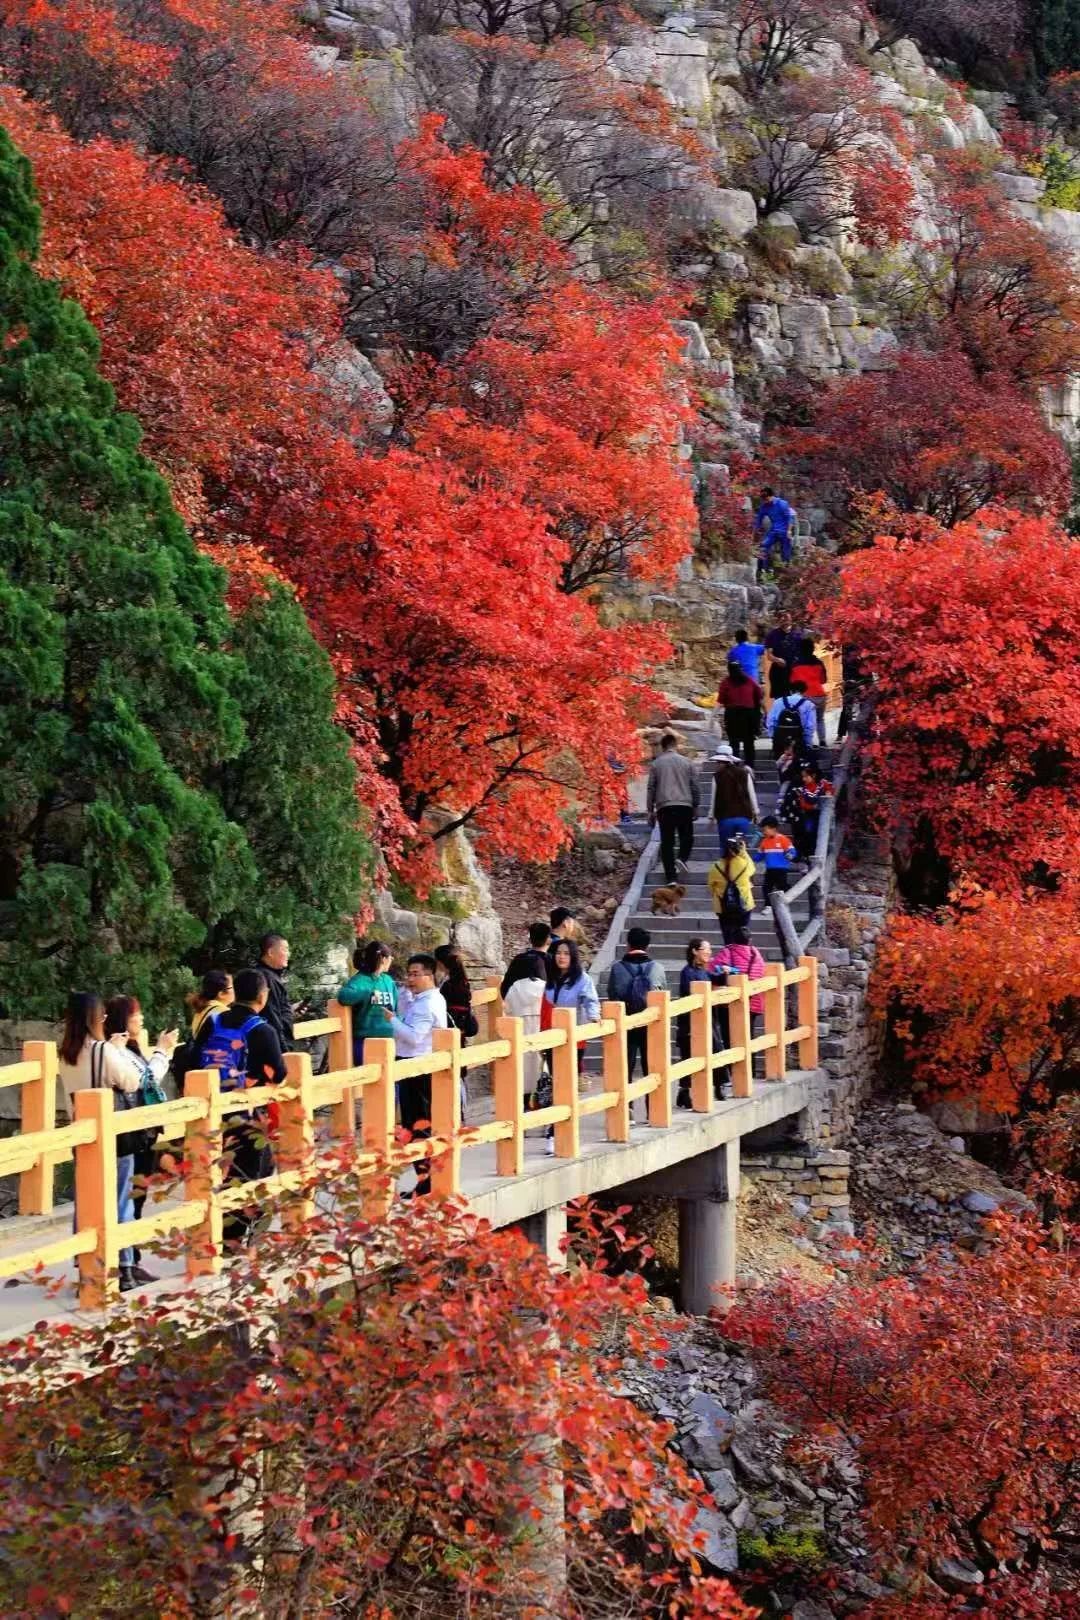 漫山红遍,层林尽染,临朐石门坊景区进入最佳观赏时节,吸引大批游客